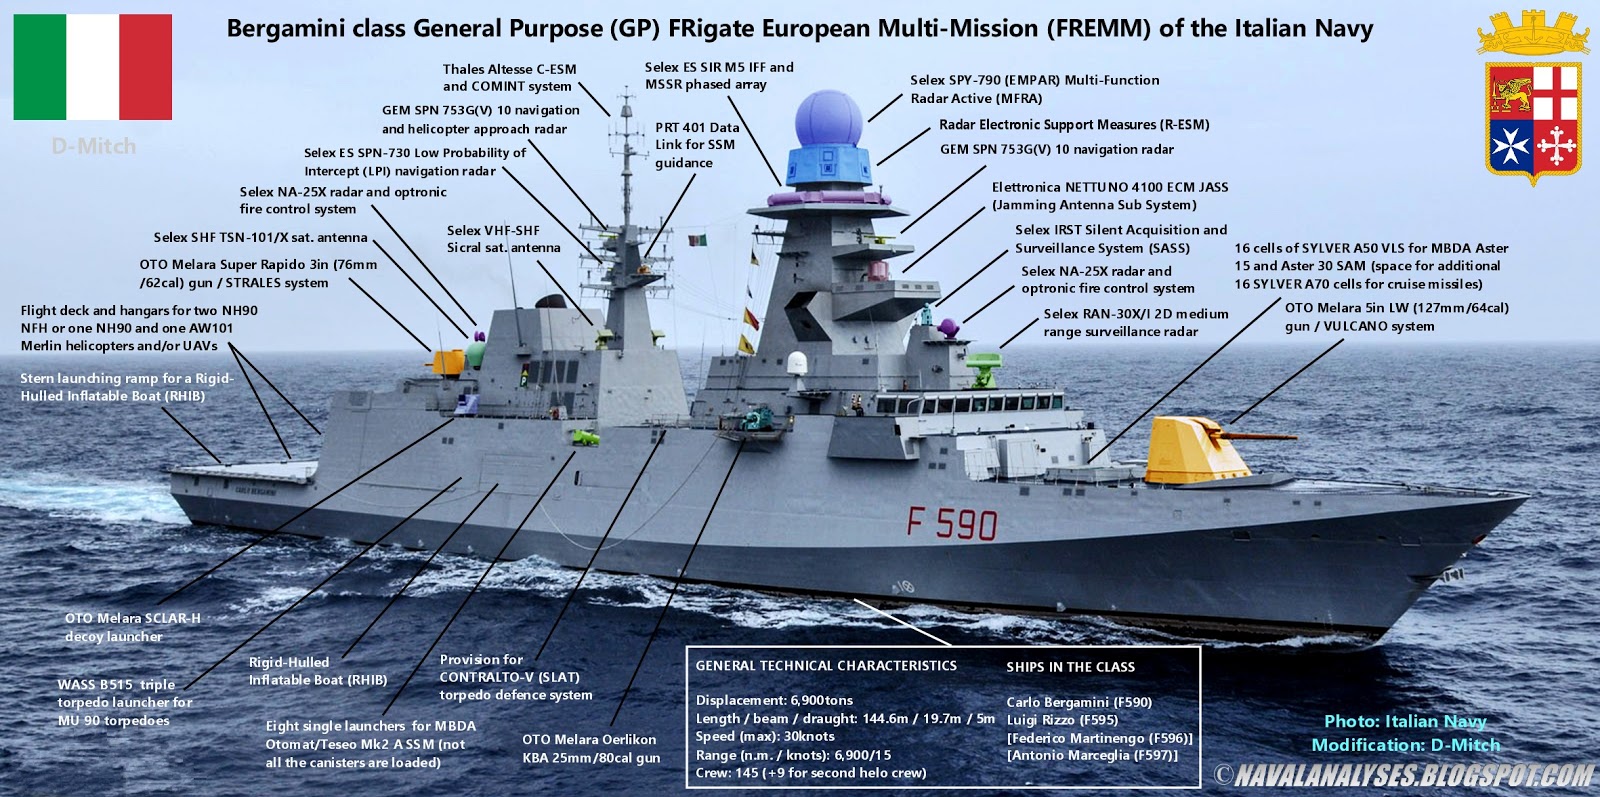 Naval Analyses: Bergamini class (FREMM) frigates of the Italian Navy